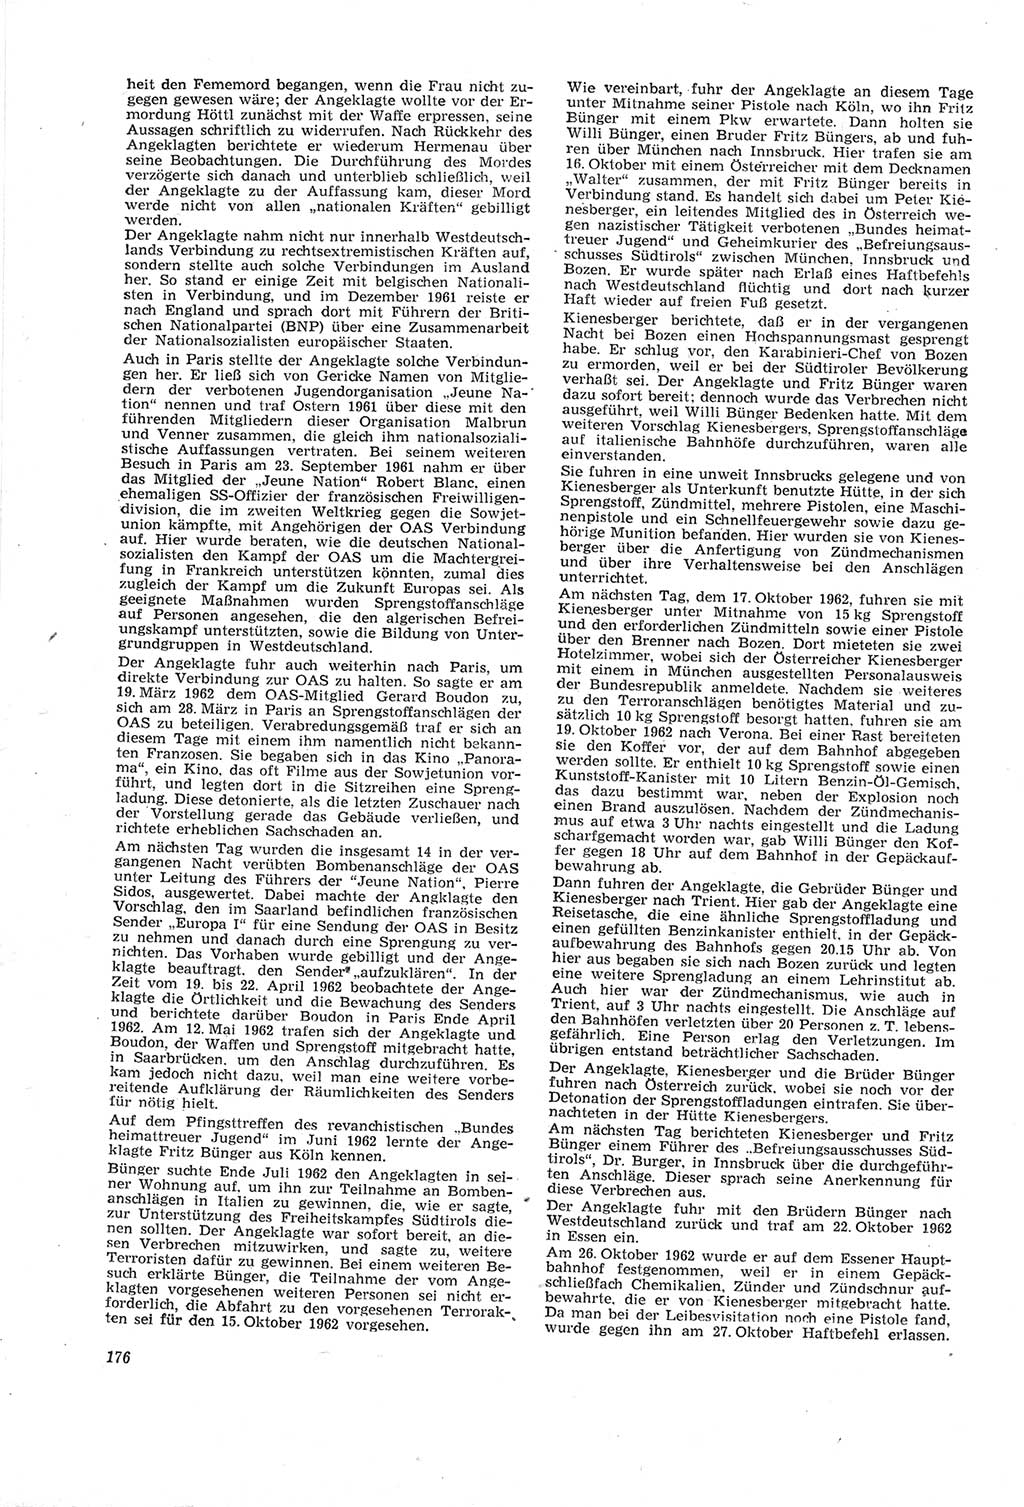 Neue Justiz (NJ), Zeitschrift für Recht und Rechtswissenschaft [Deutsche Demokratische Republik (DDR)], 18. Jahrgang 1964, Seite 176 (NJ DDR 1964, S. 176)